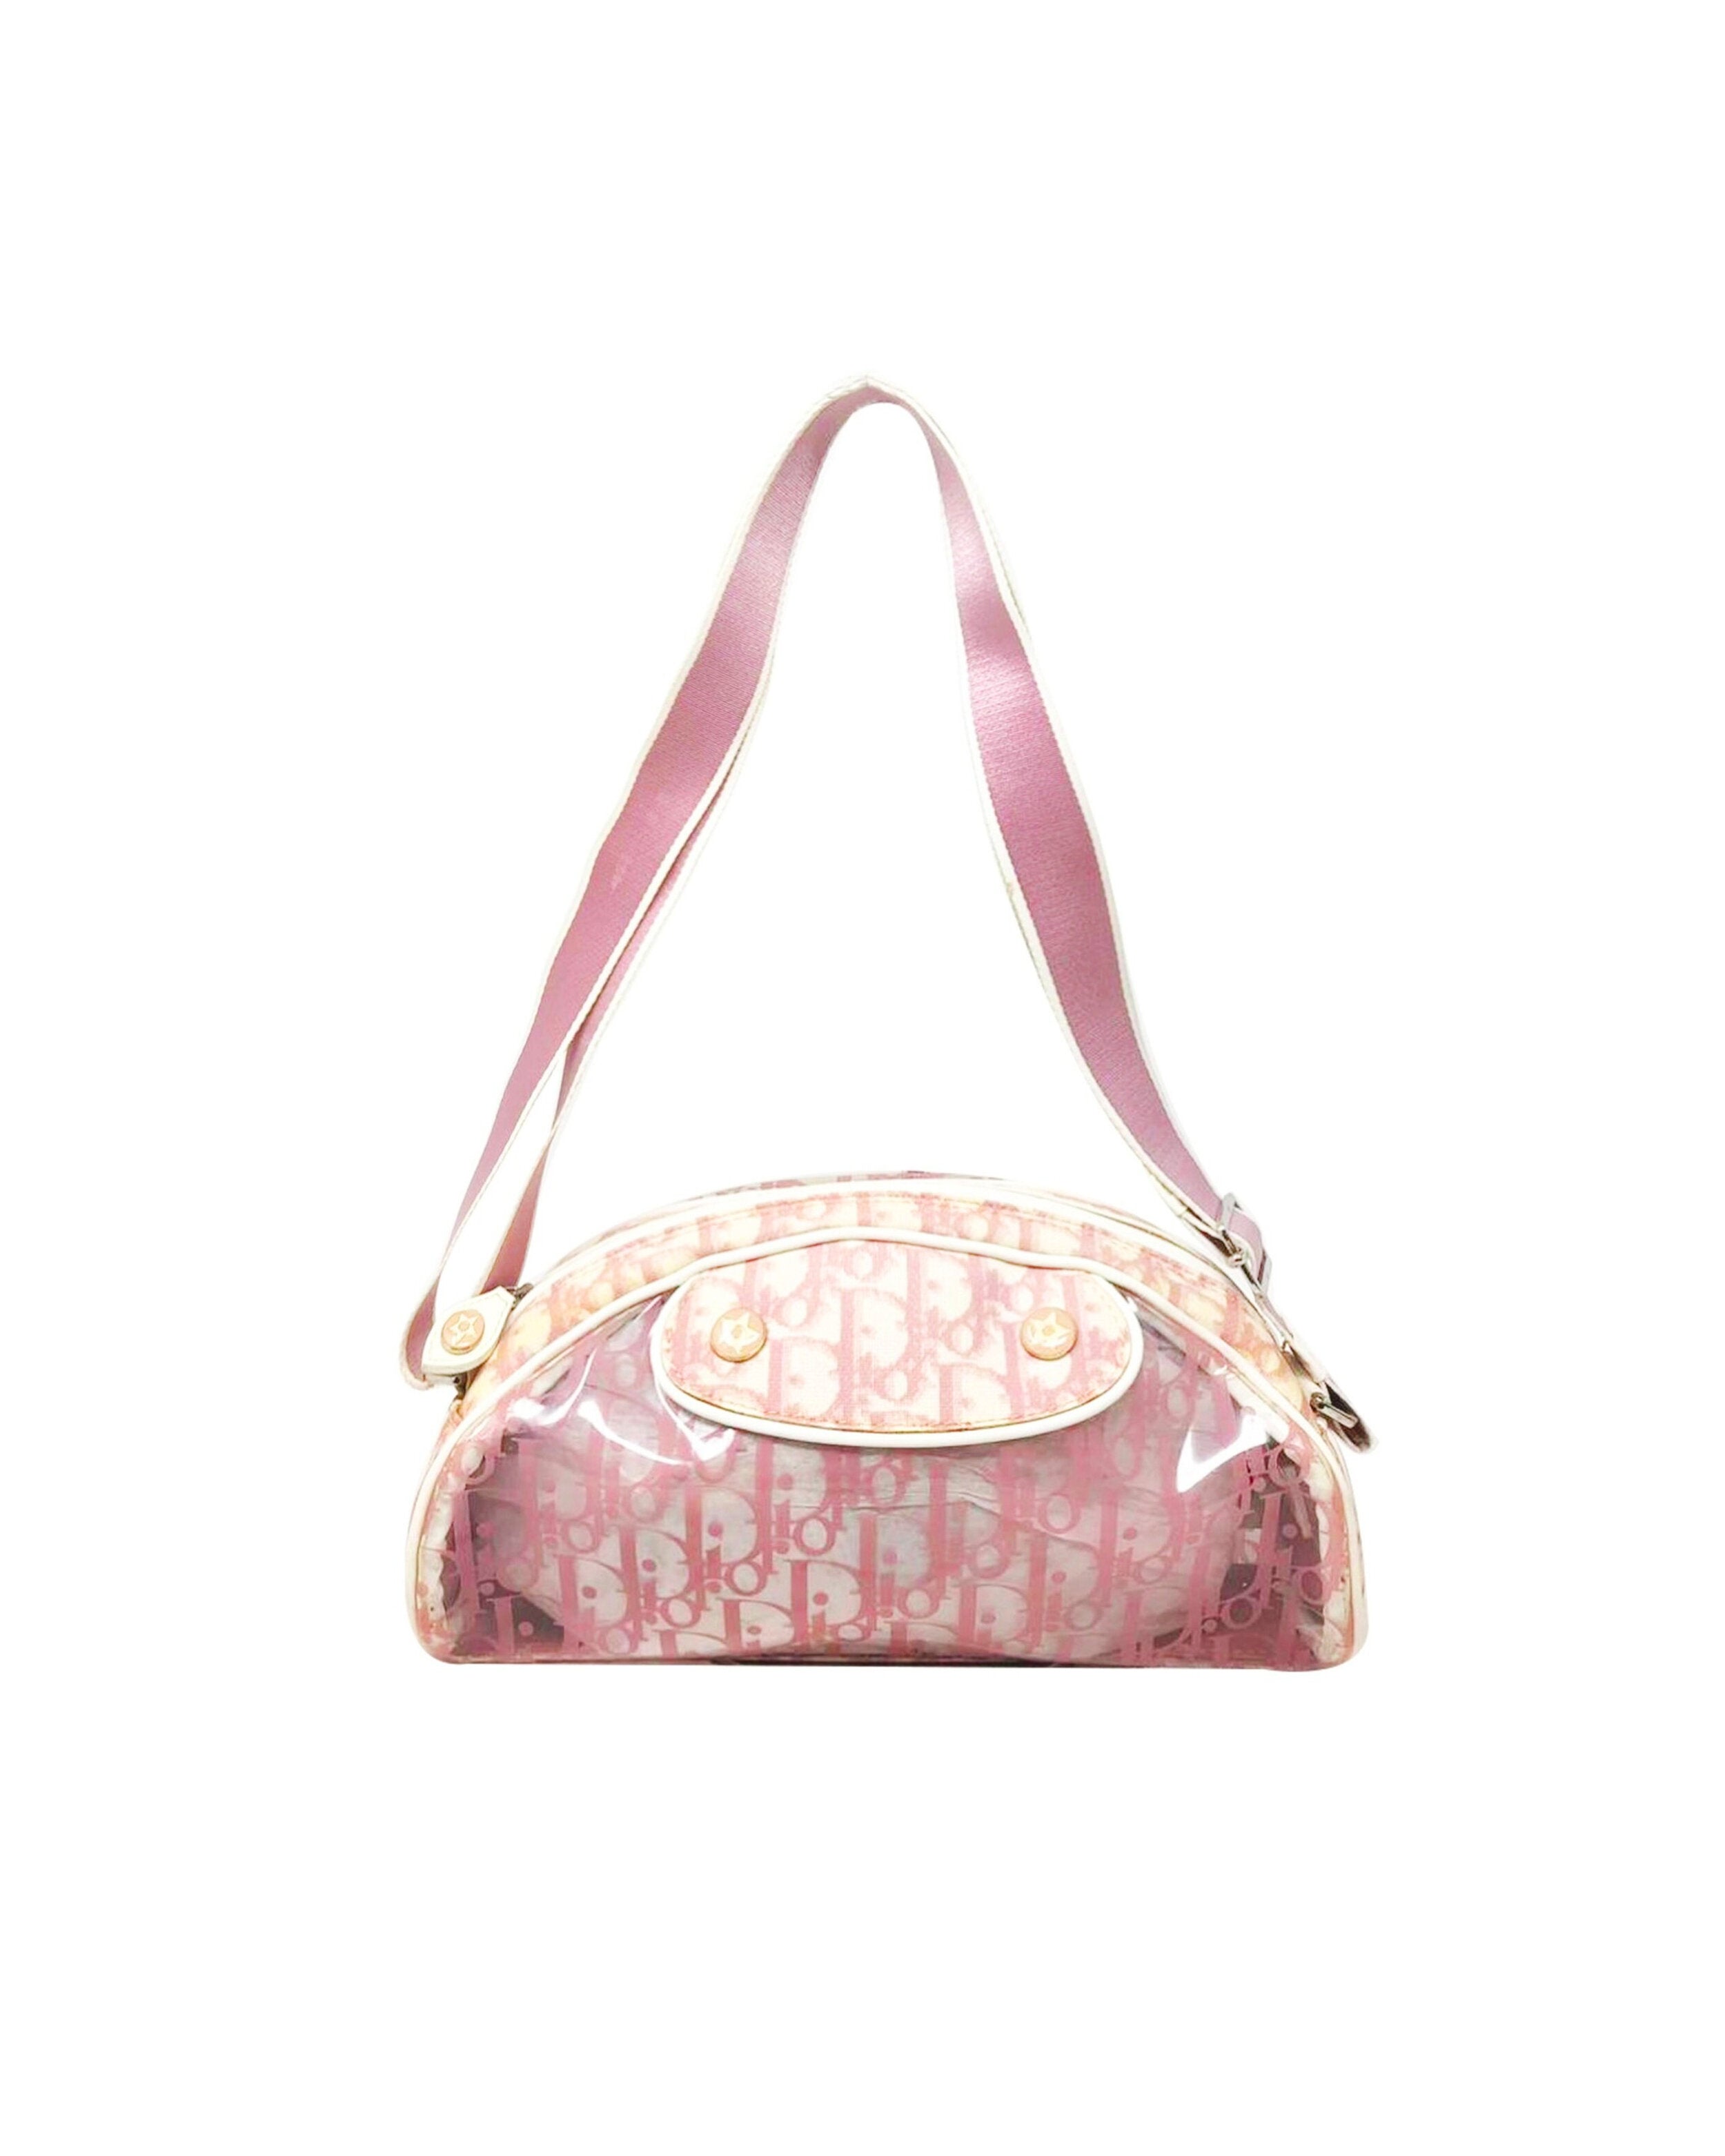 Christian Dior 2000s Pink Trotter Shoulder Bag